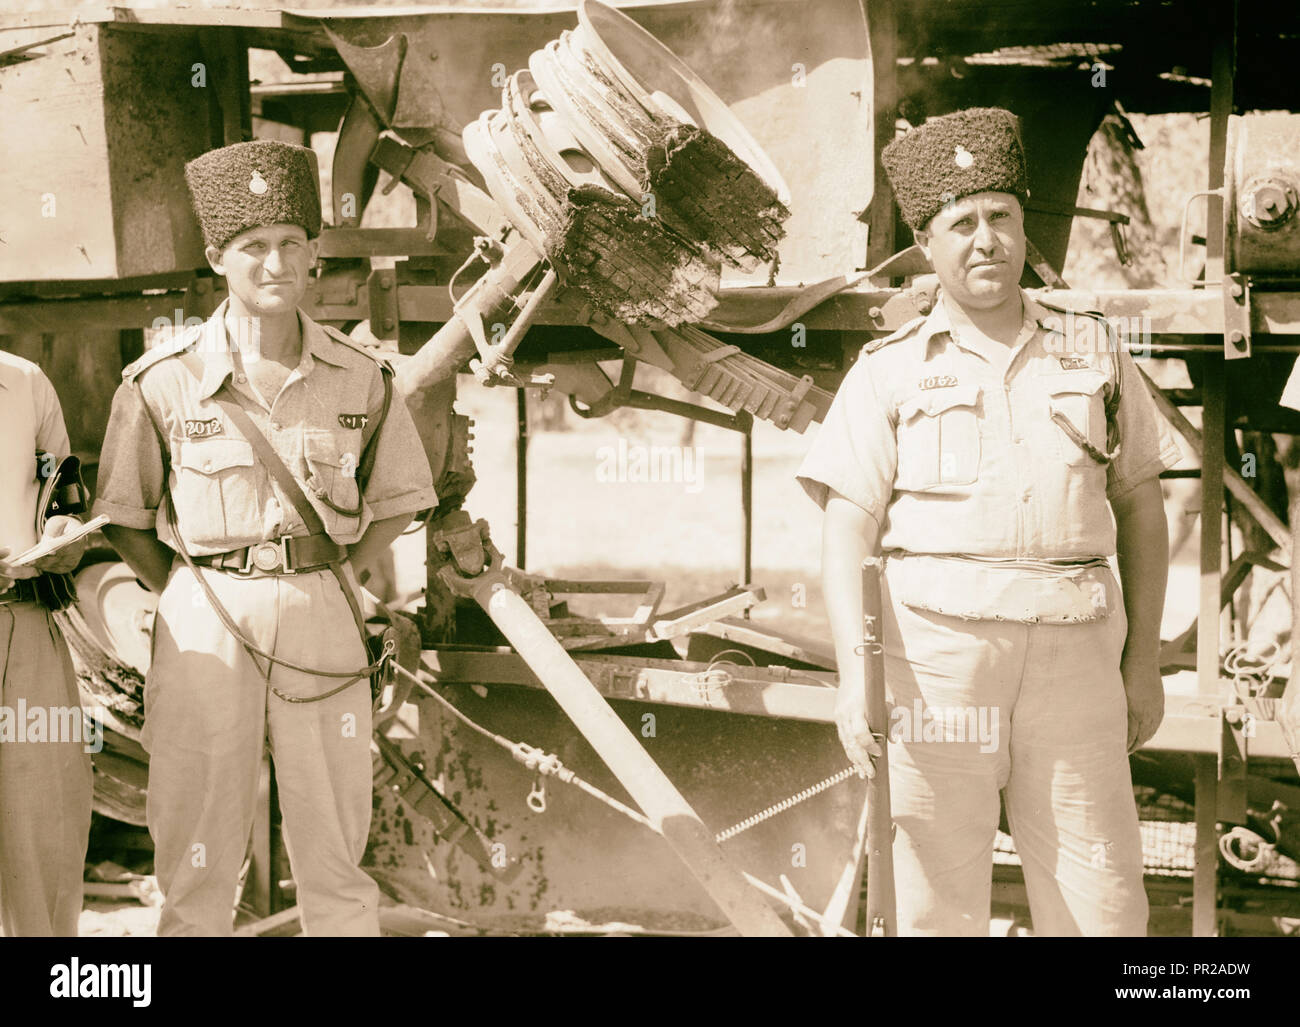 Haifa, aufgrund von terroristischen Handlungen und Maßnahmen der Regierung. Reste eines verbrannten Jüdischen Bus, etc. close-up. 1938, Israel, Haifa Stockfoto